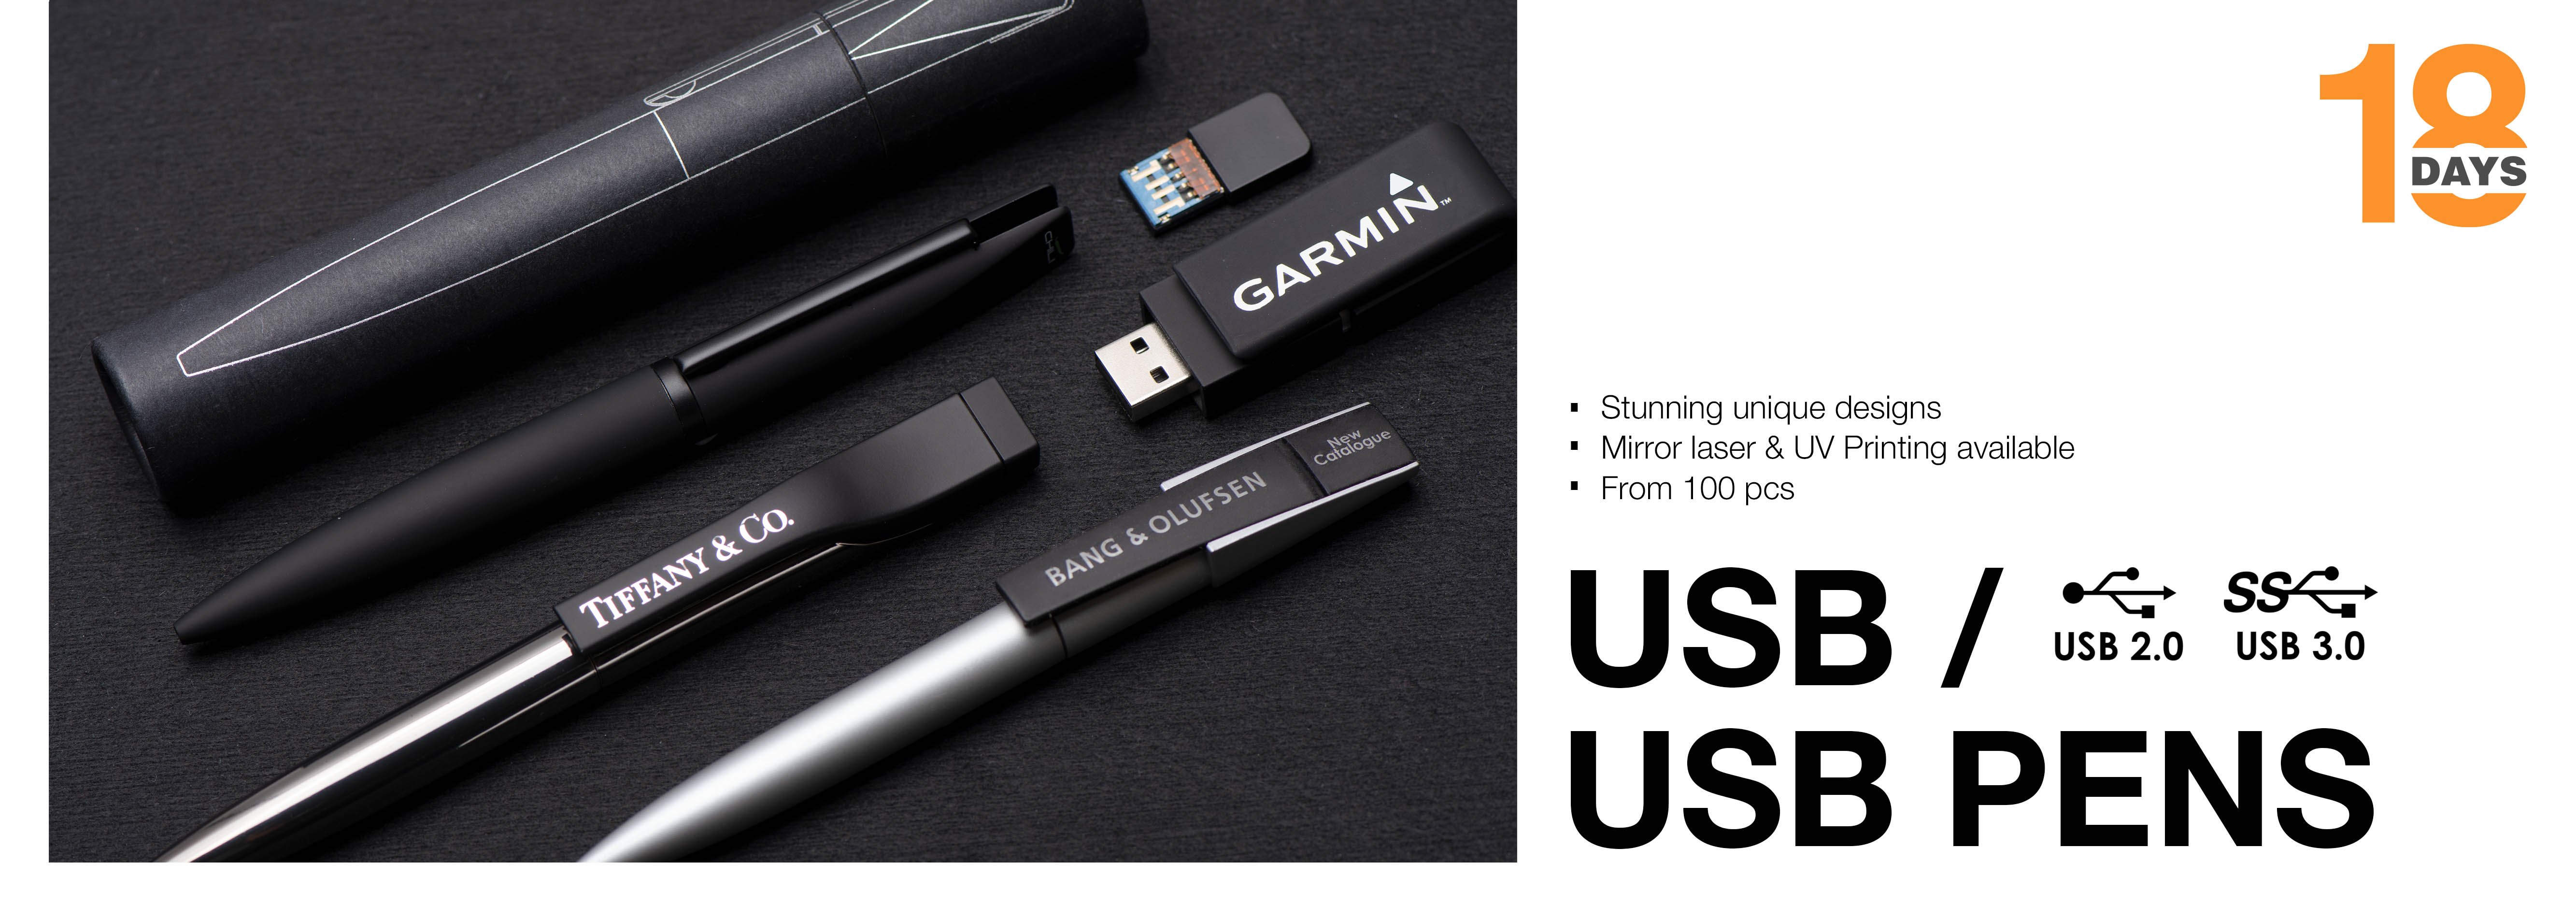 18D | USB & USB PENS